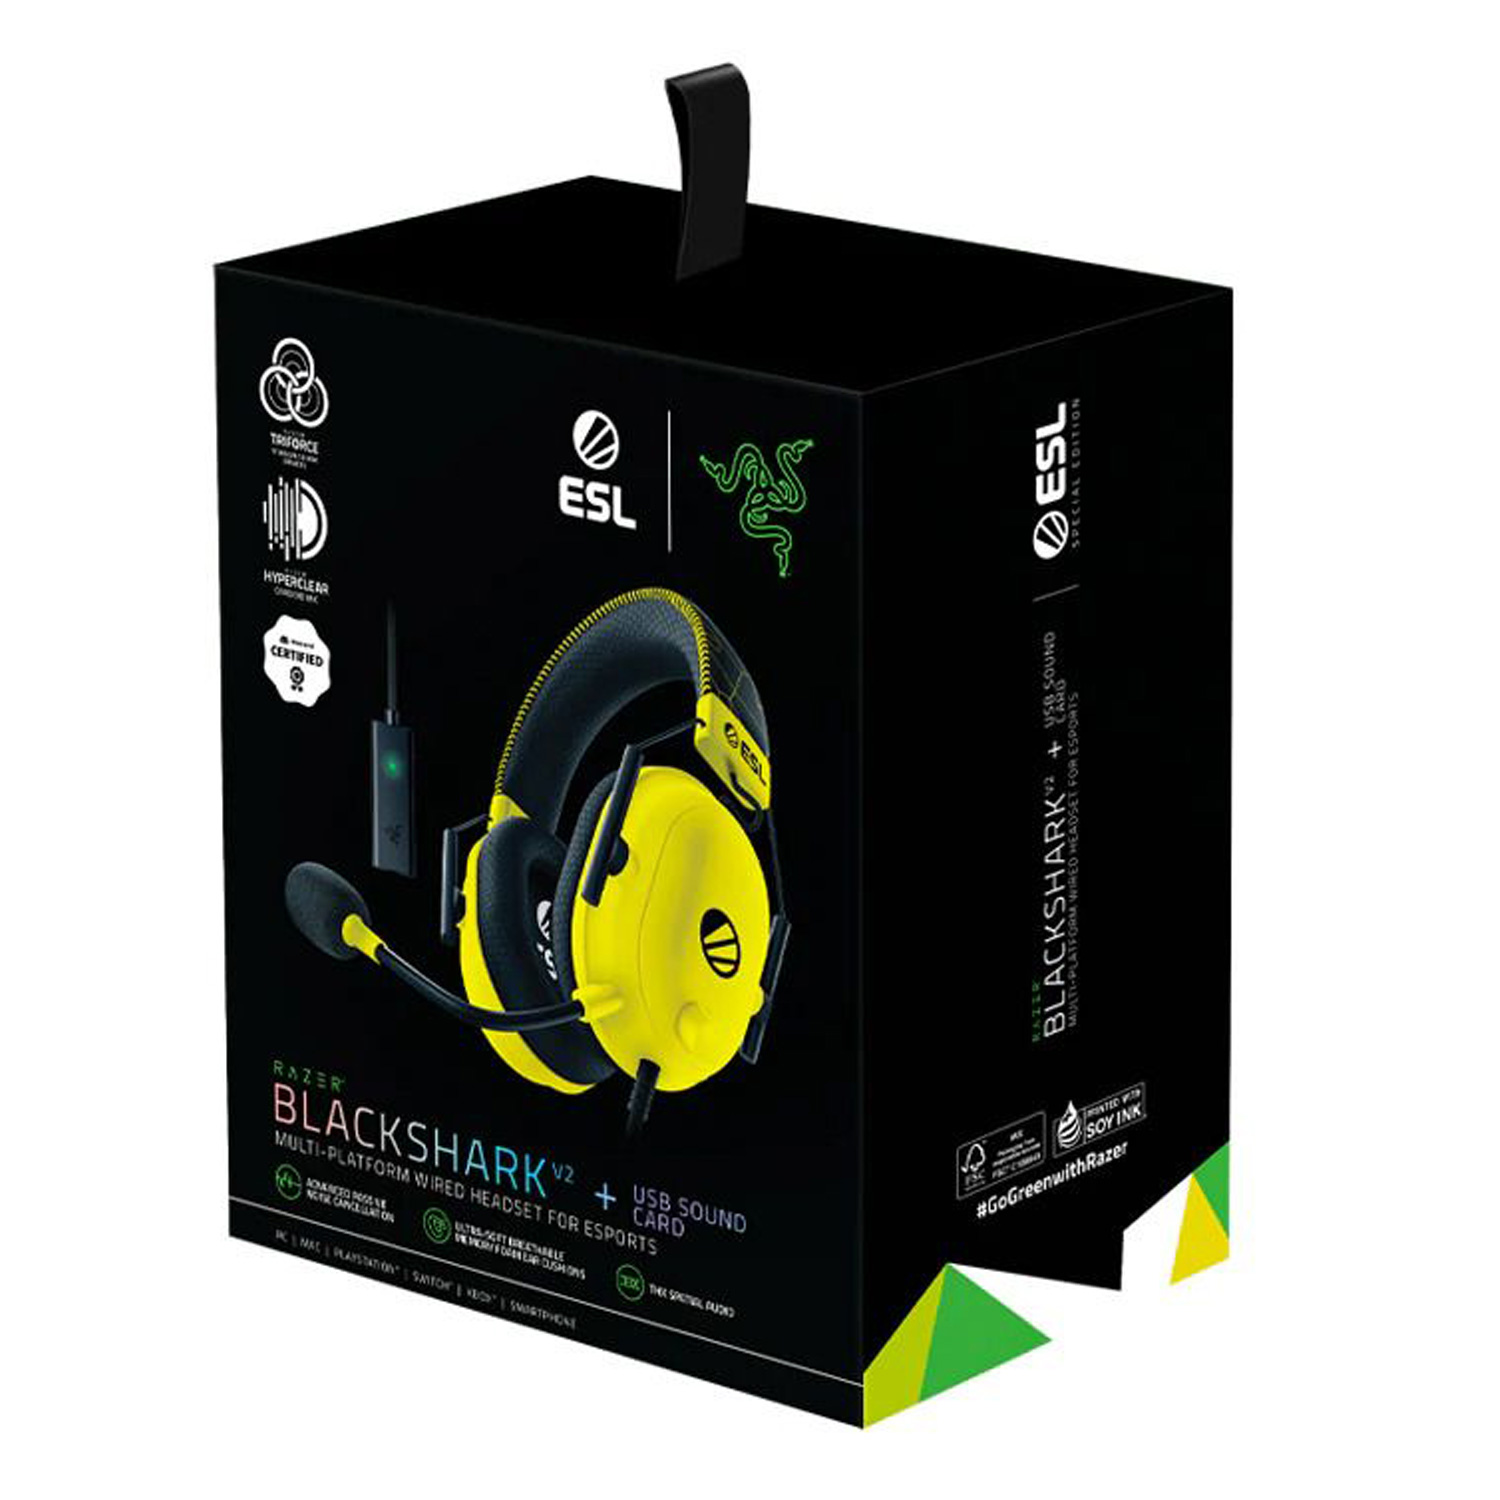 Headset Gamer Razer Blackshark V2 ESL + USB Sound Card - (RZ04-03230500-R3M1)